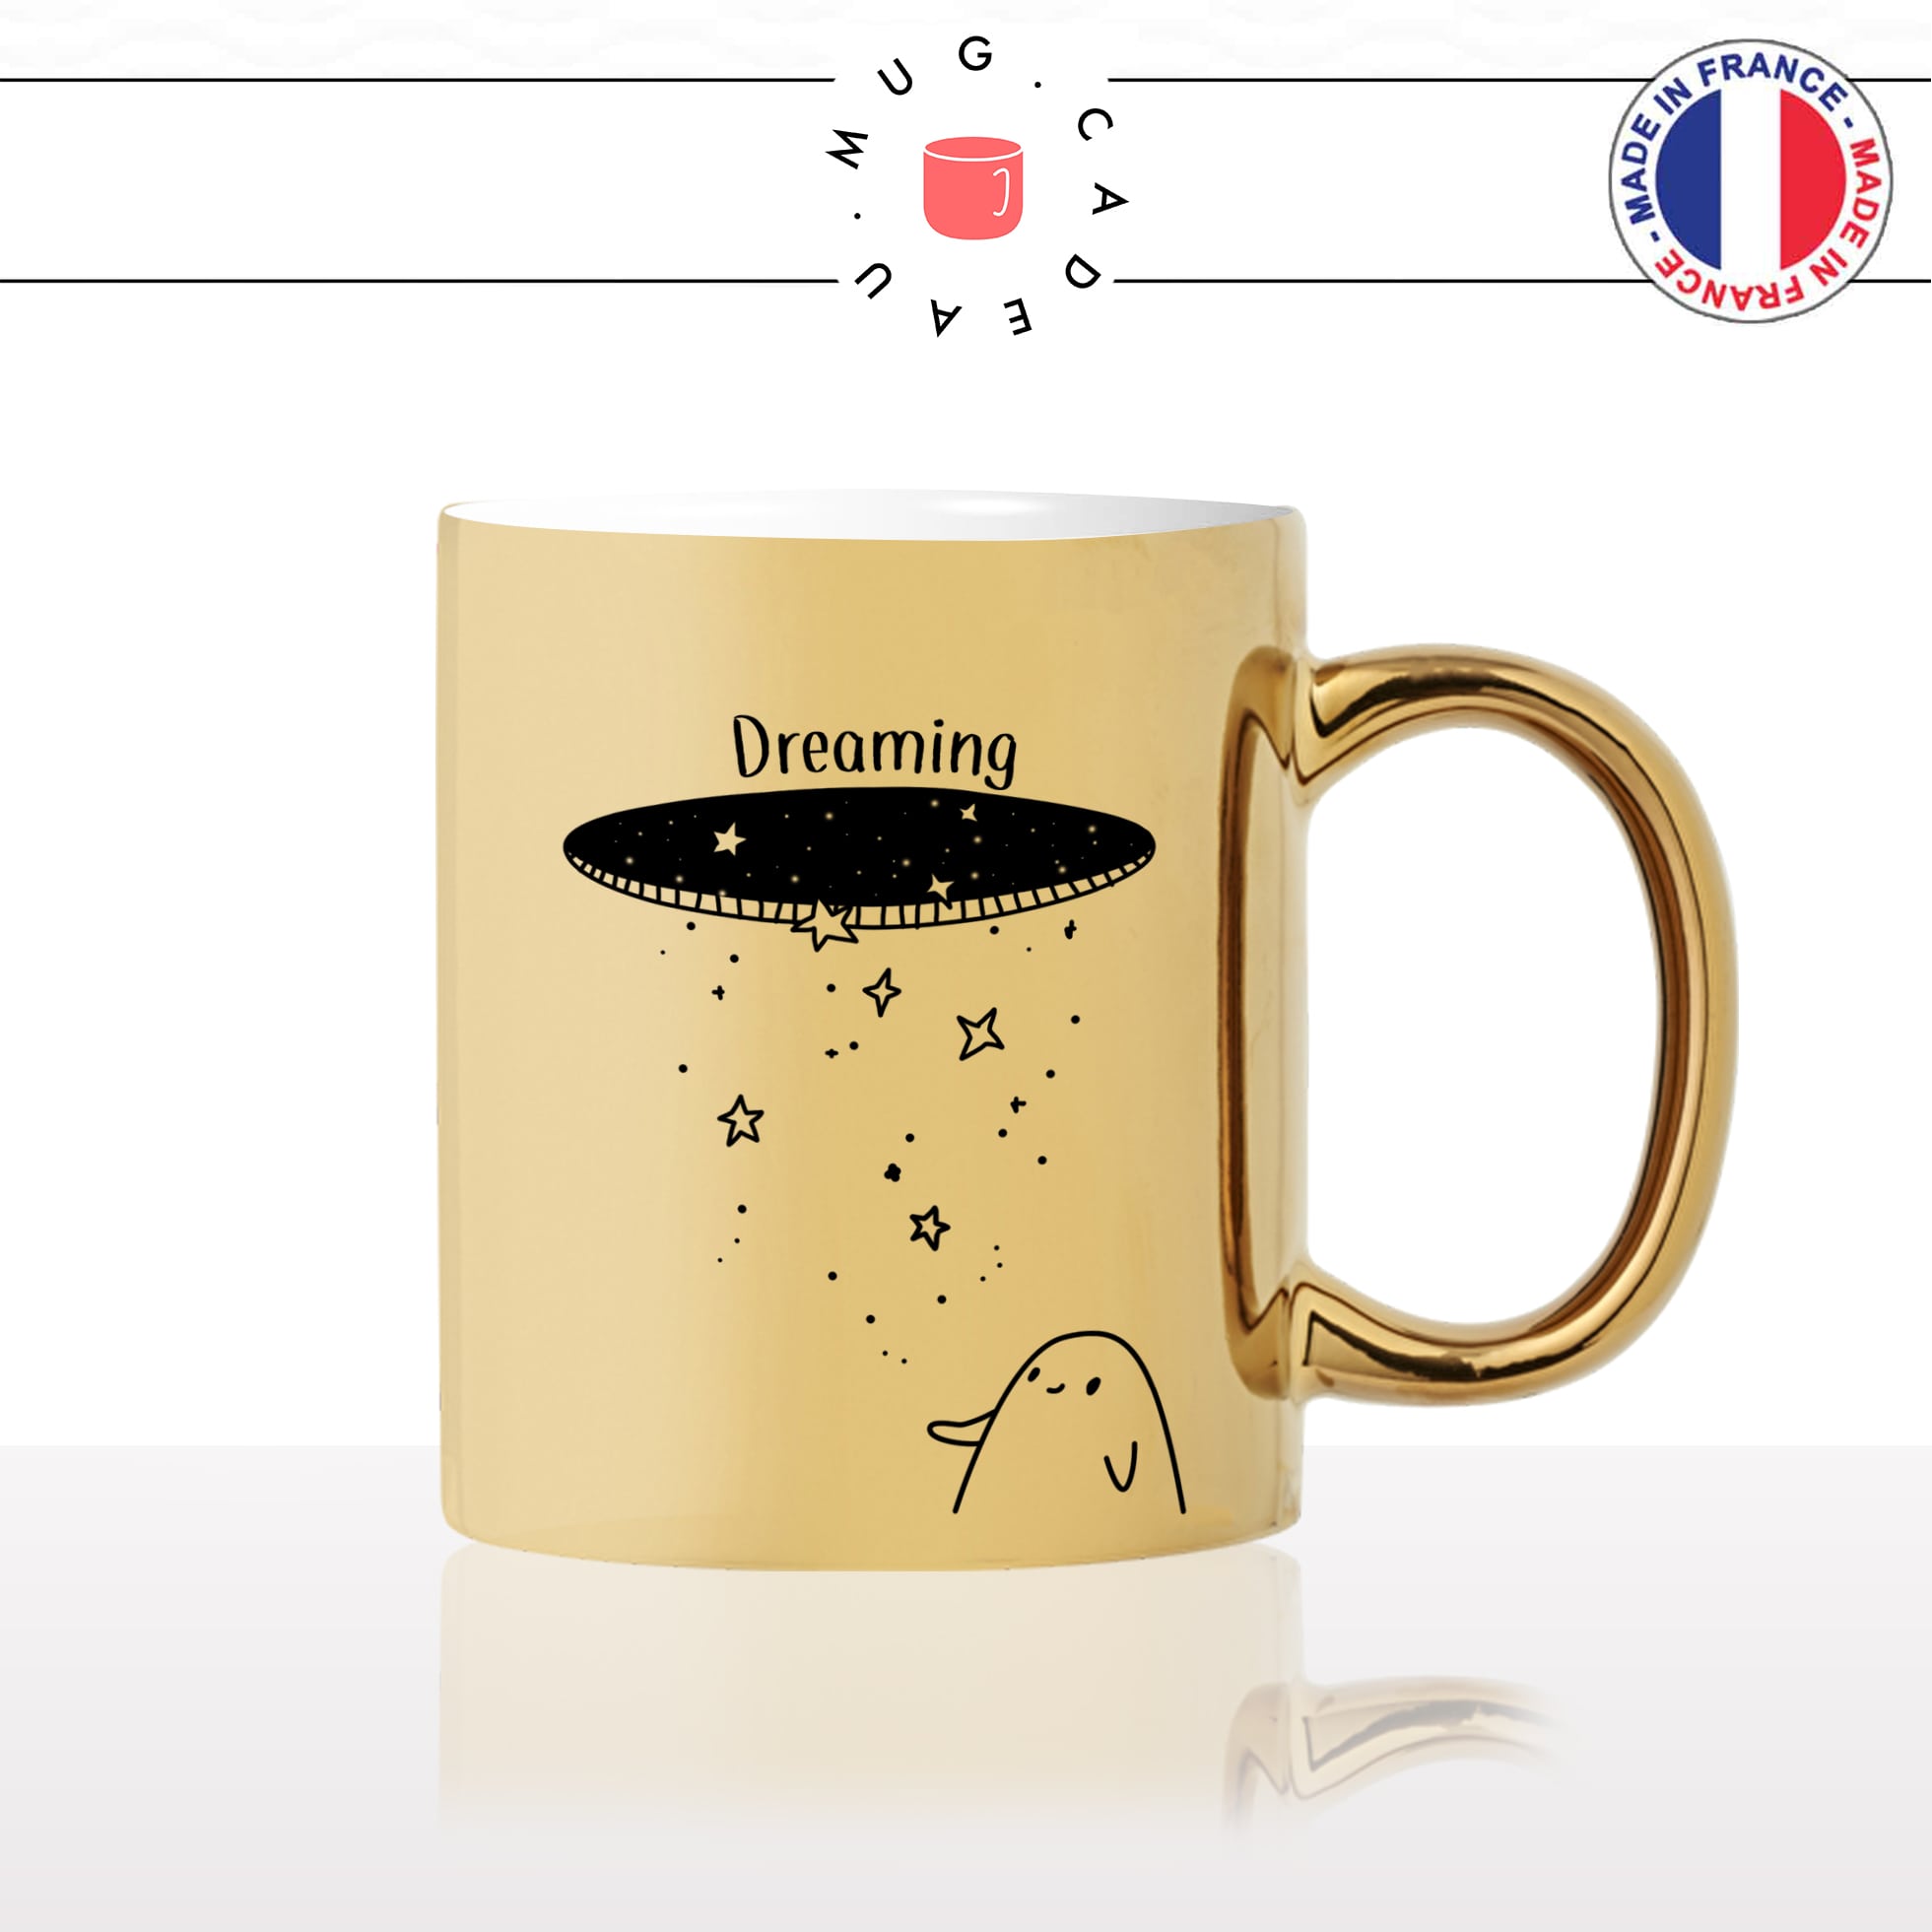 mug-tasse-or-doré-gold-espace-dreaming-etoiles-fantome-alien-space-planetes-nasa-cool-idée-cadeau-drole-original-fun-café-thé-personnalisé2-min